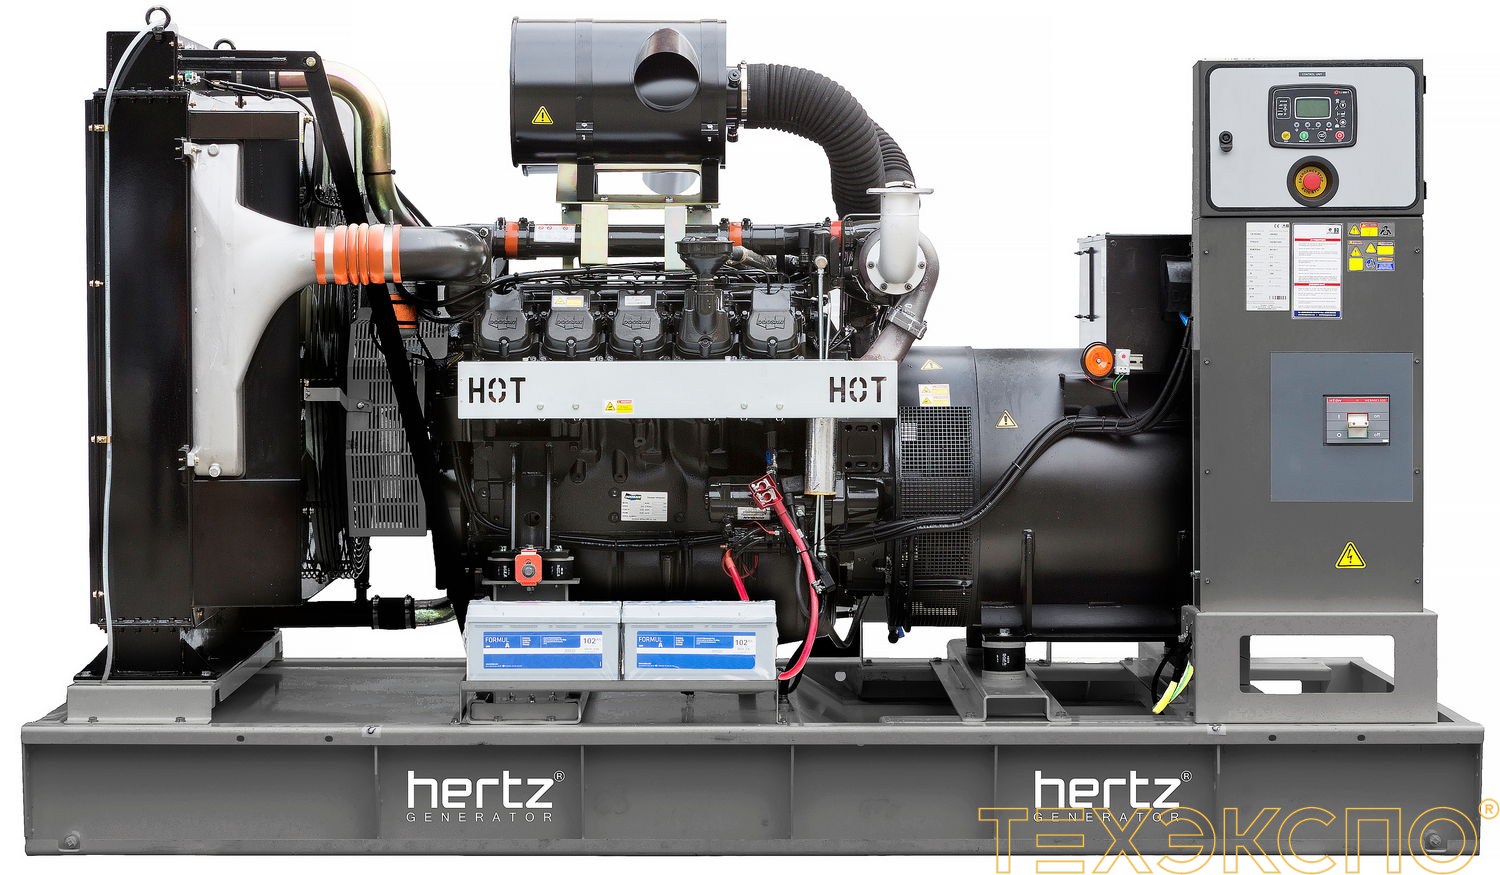 HERTZ HG703DC - ДЭС 512 кВт в Санкт-Петербурге за 9 582 335 рублей | Дизельная электростанция в Техэкспо